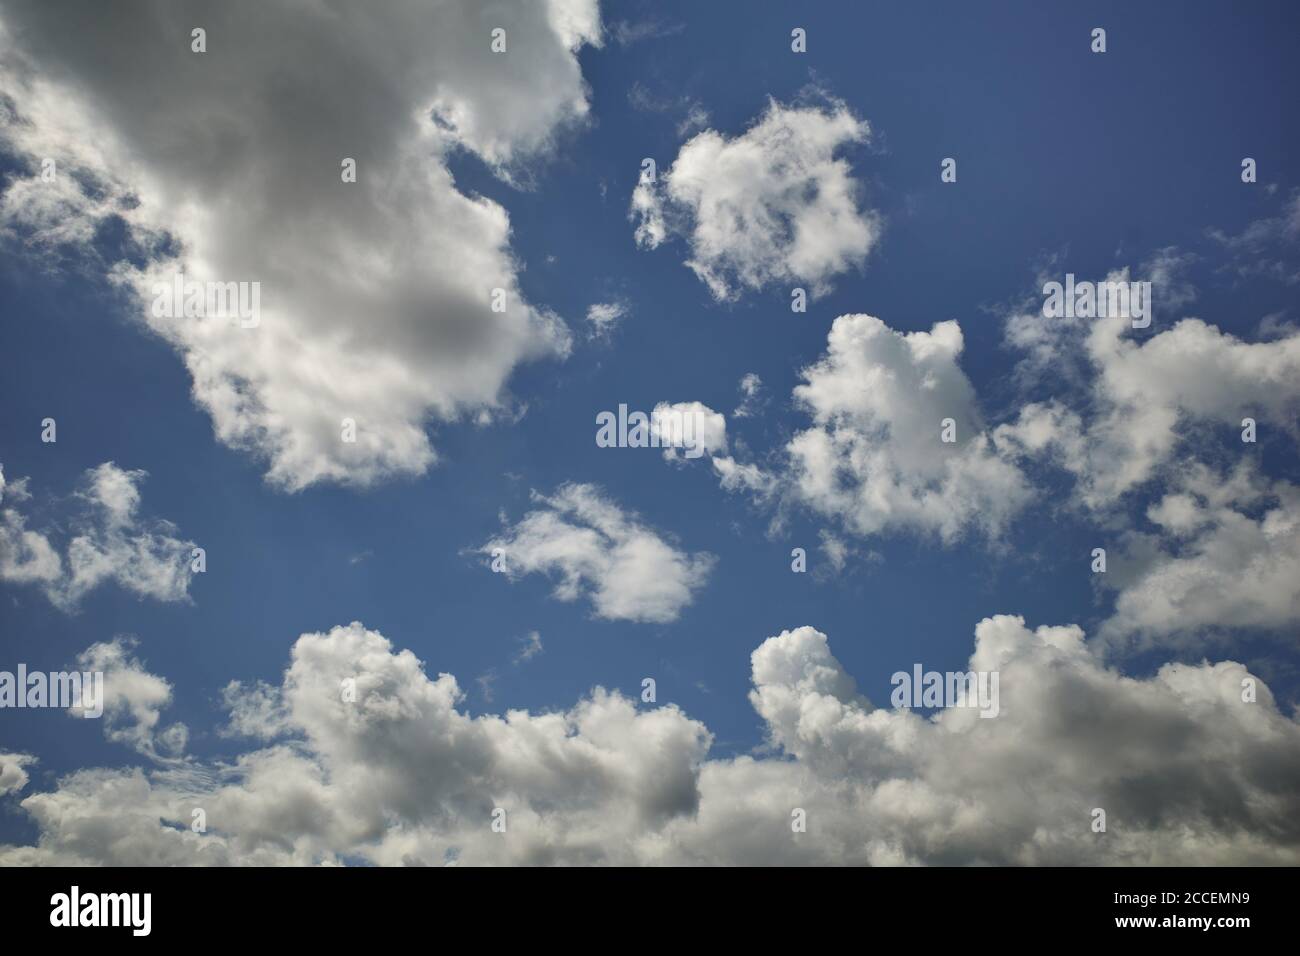 Flauschige Kumuluswolken im herrlichen blauen Himmel. Ein Himmel mit Sonnenlicht. Hintergrund für Vorhersage und Meteorologie Illustration Stockfoto